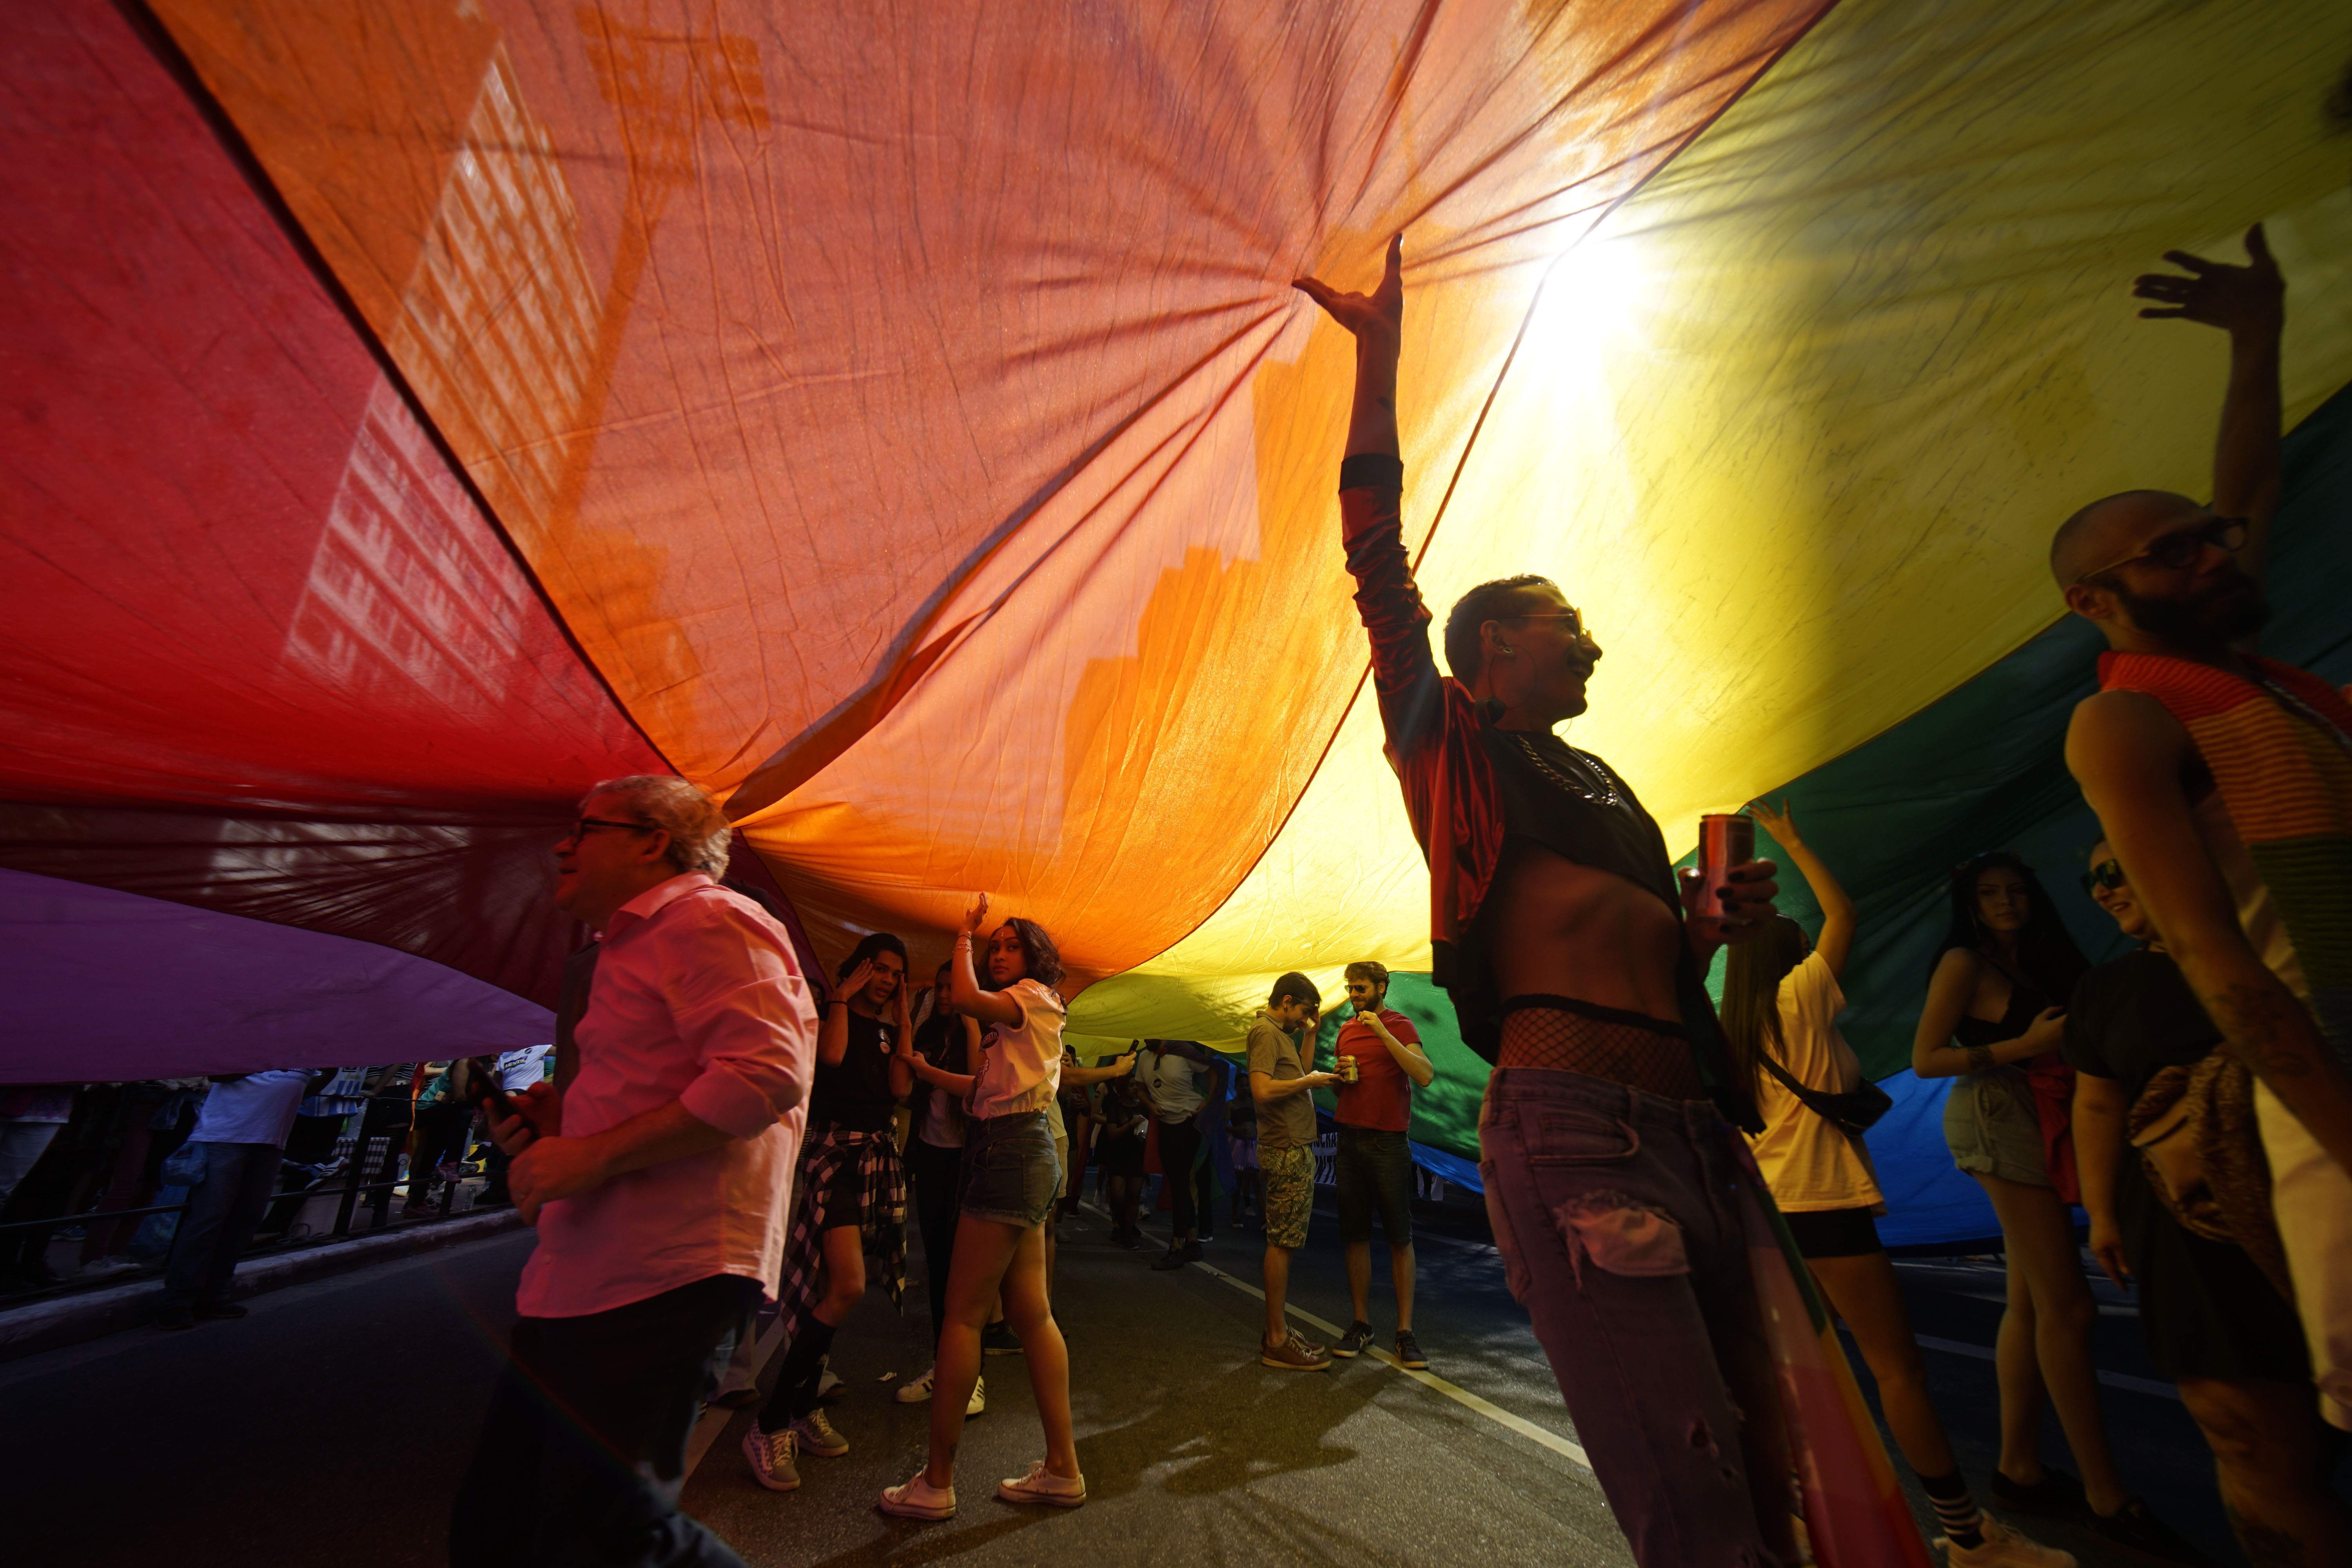 Este es el país más peligroso para las personas LGBTIQ+, según un informe